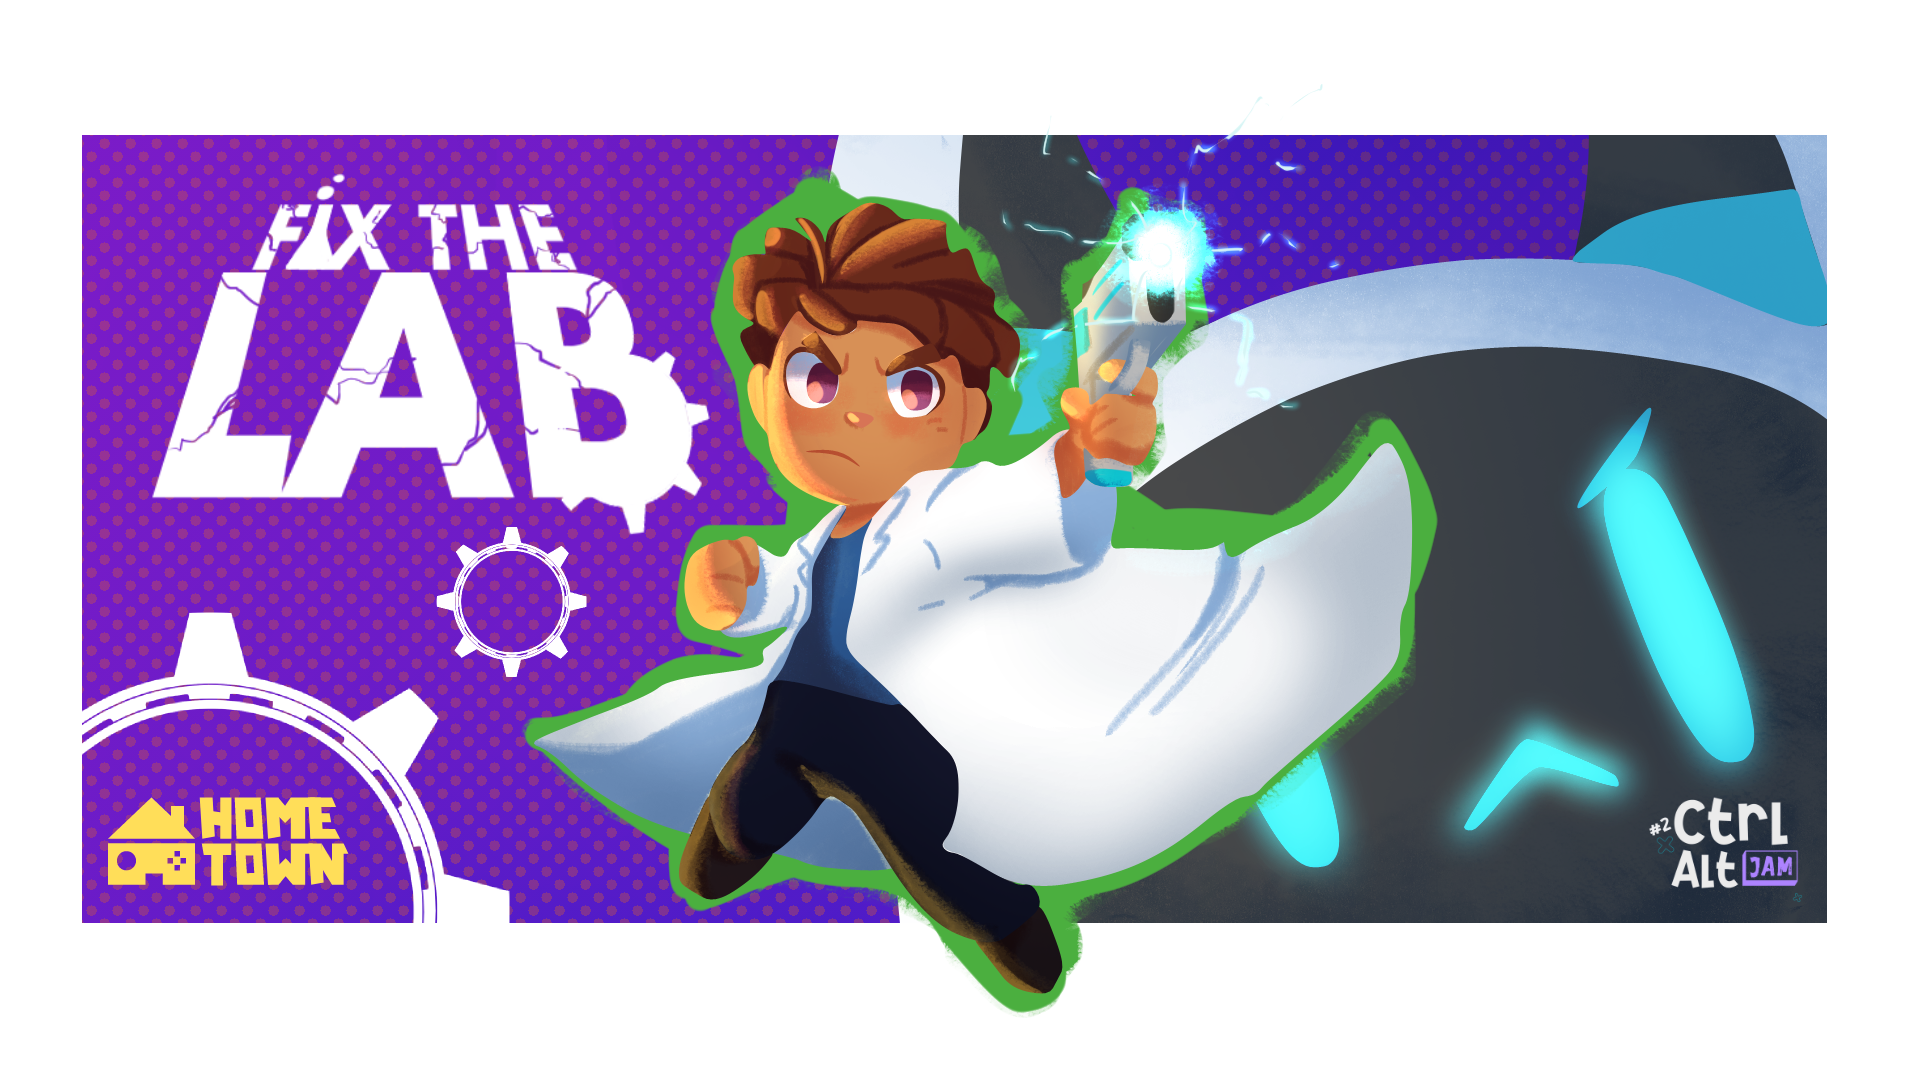 Fix The Lab!